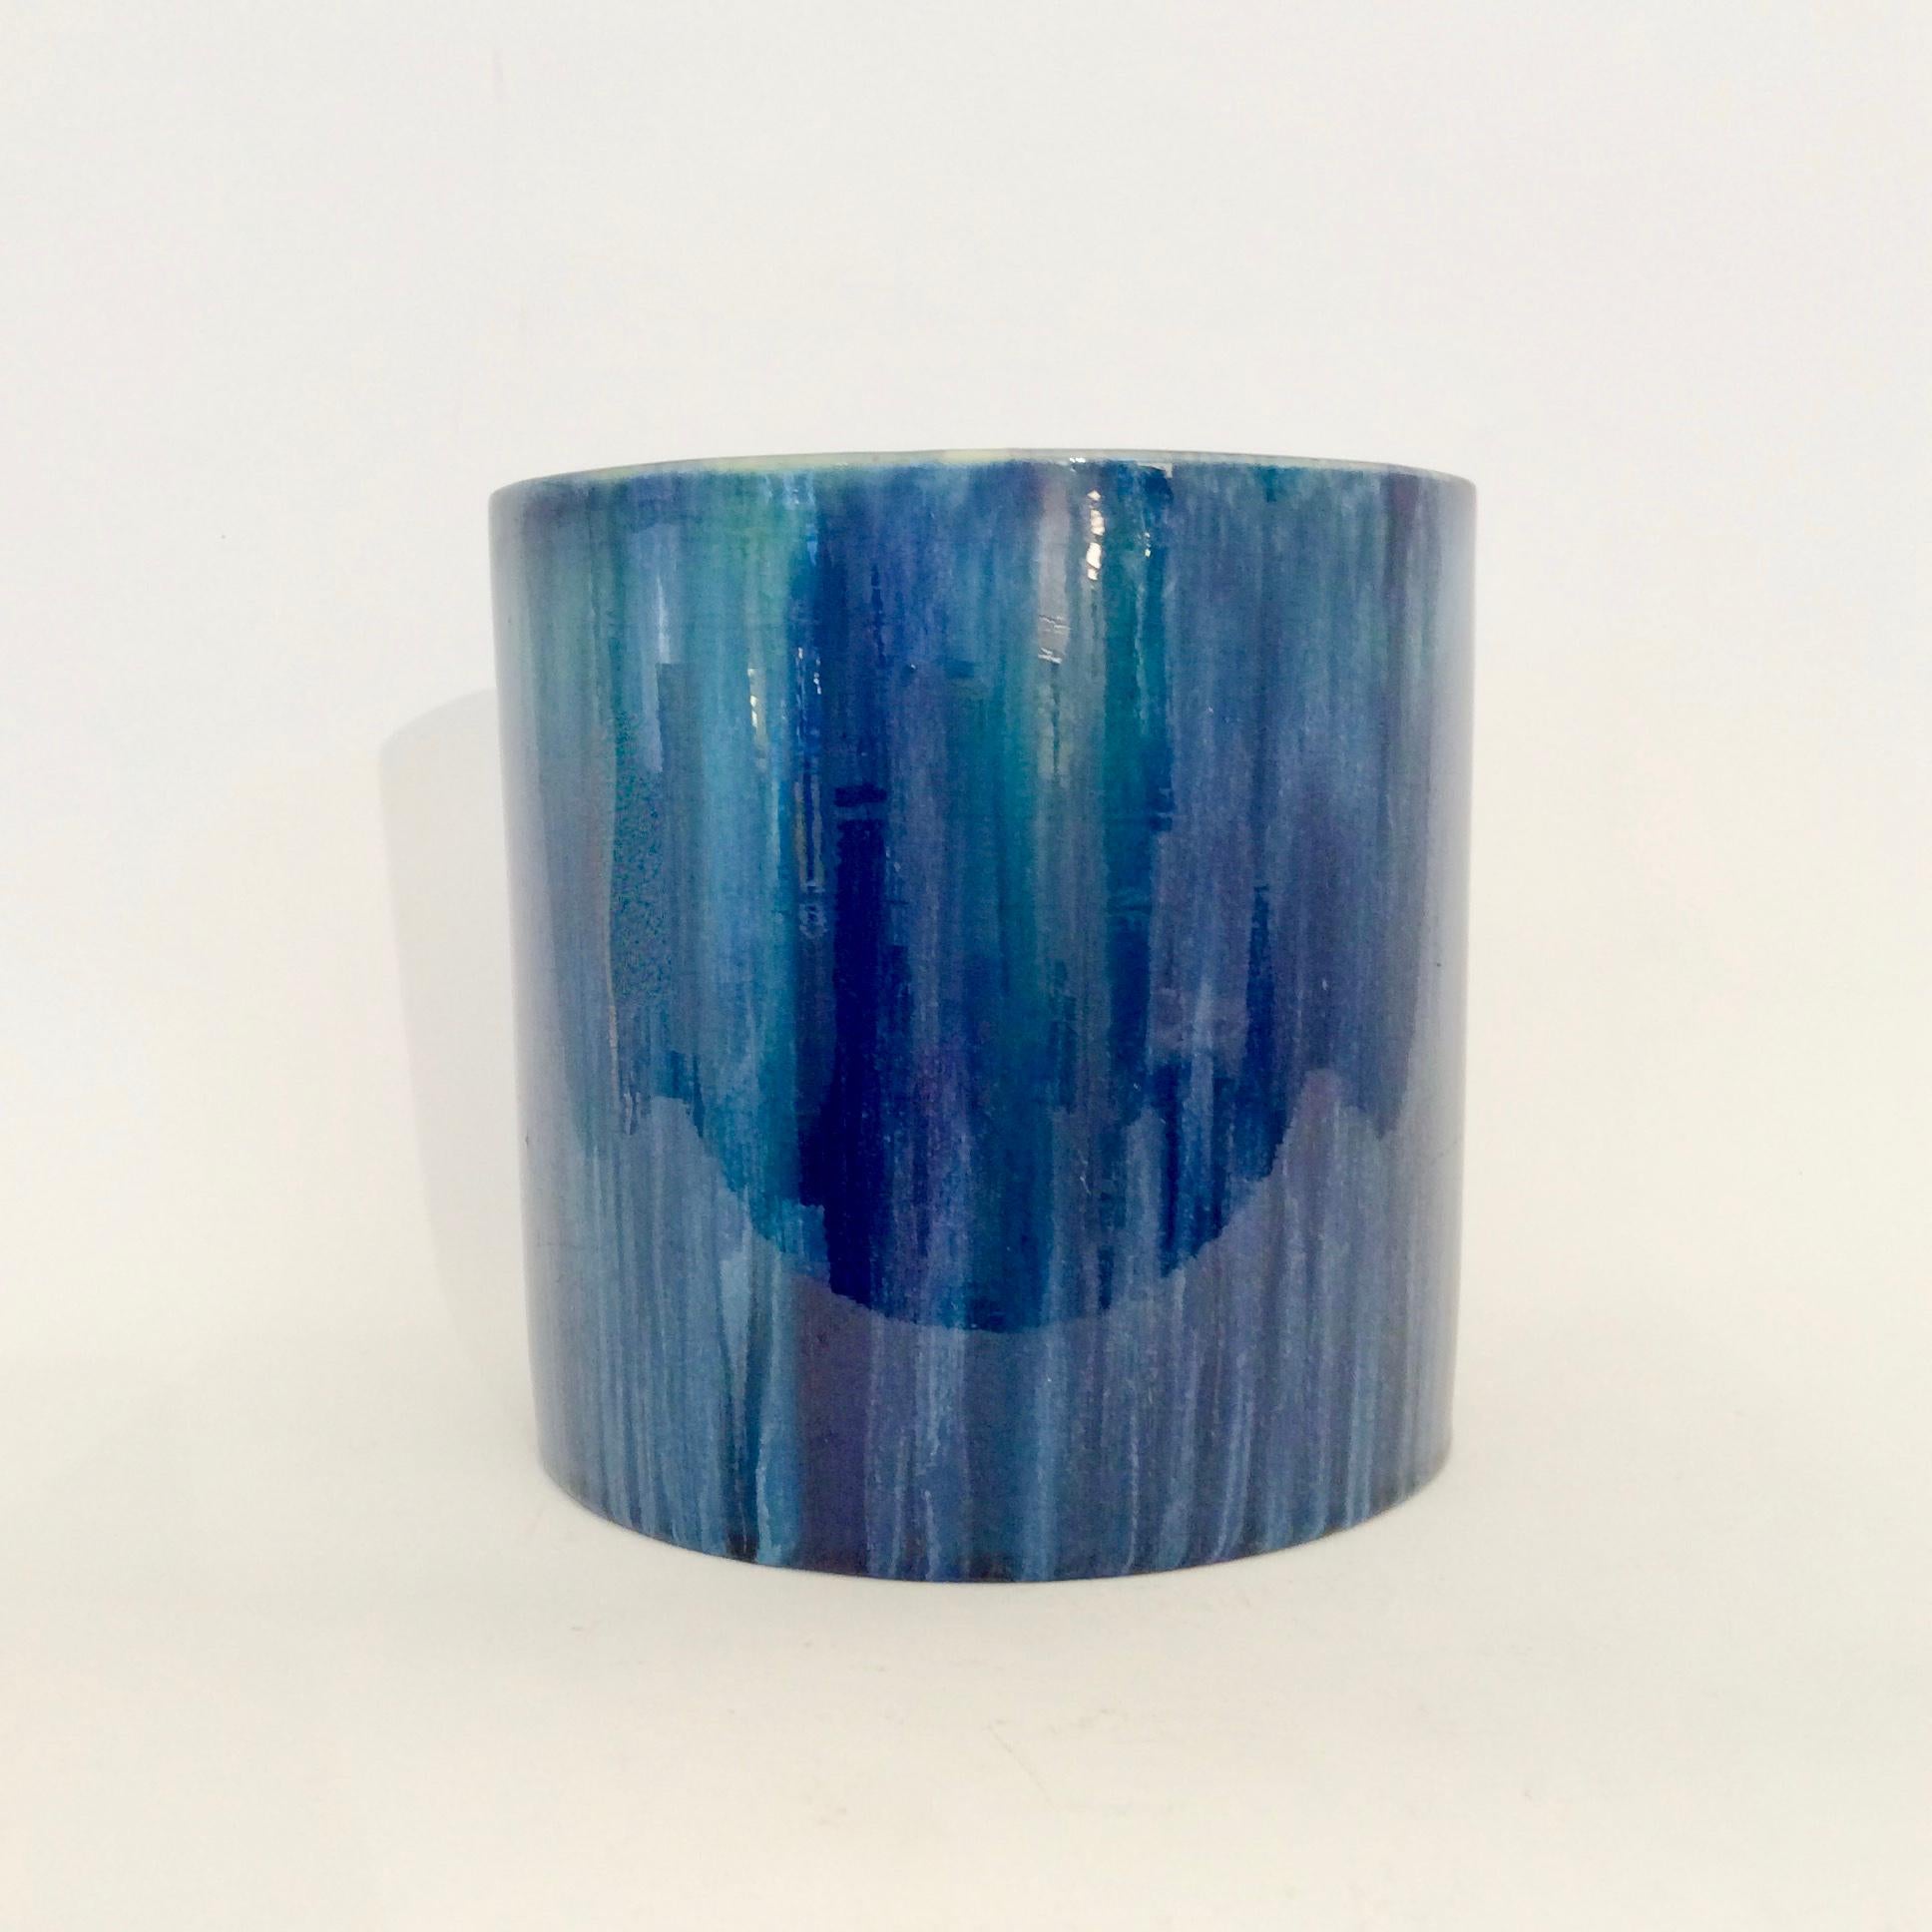 Serrurier-Bovy Blue Enameled Earthenware Cylinder Vase, 1905, Belgium For Sale 2